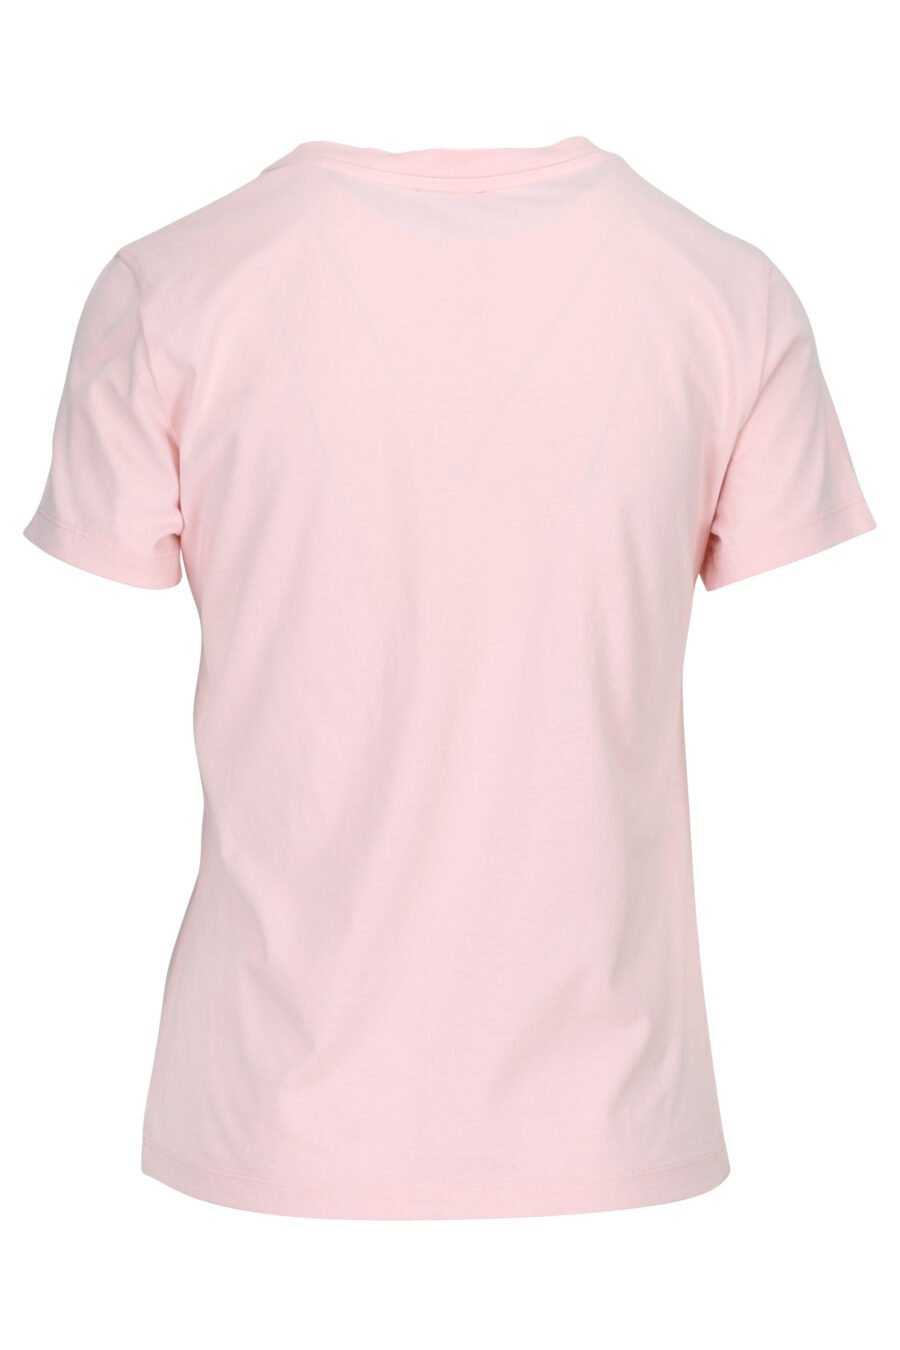 T-shirt rose avec mini logo "boke flower" - 3612230483330 1